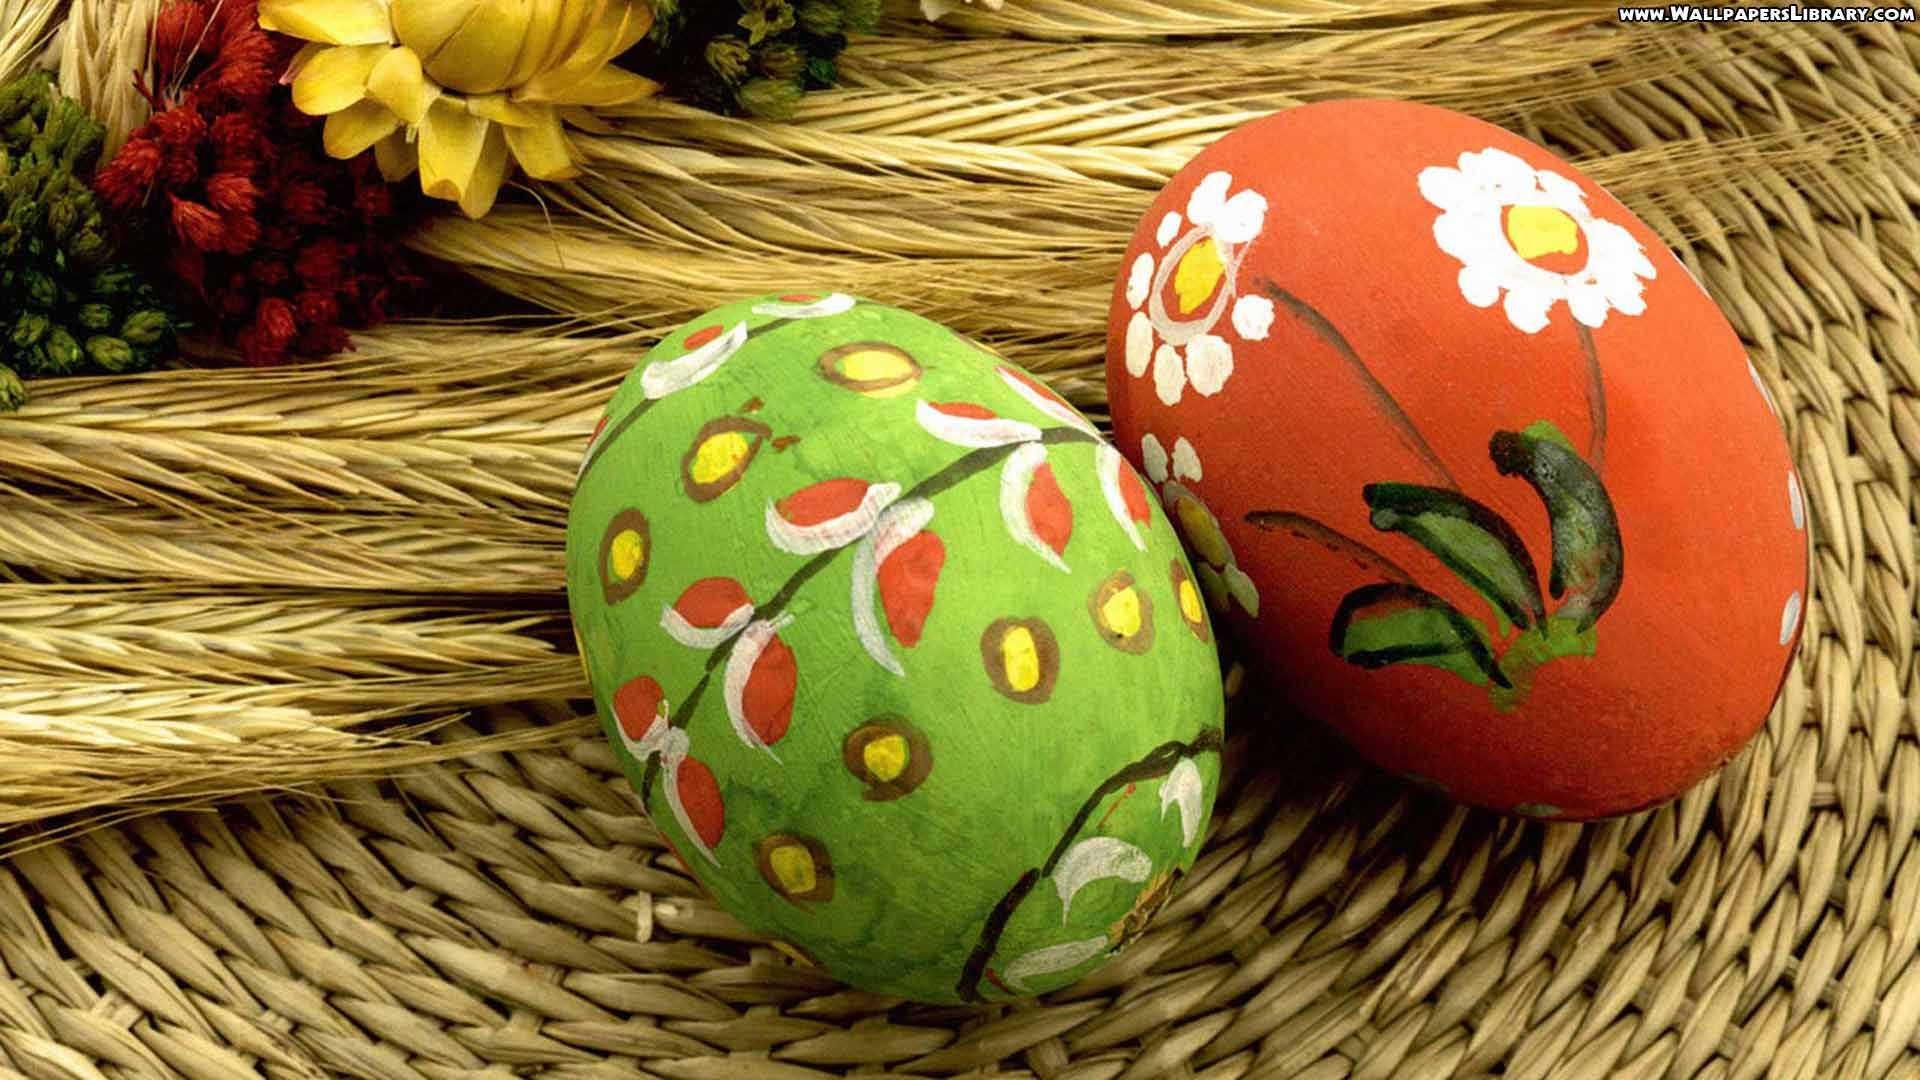 Easter Eggs Holiday Wallpaper. Easter egg painting, Creative easter eggs, Easter egg designs